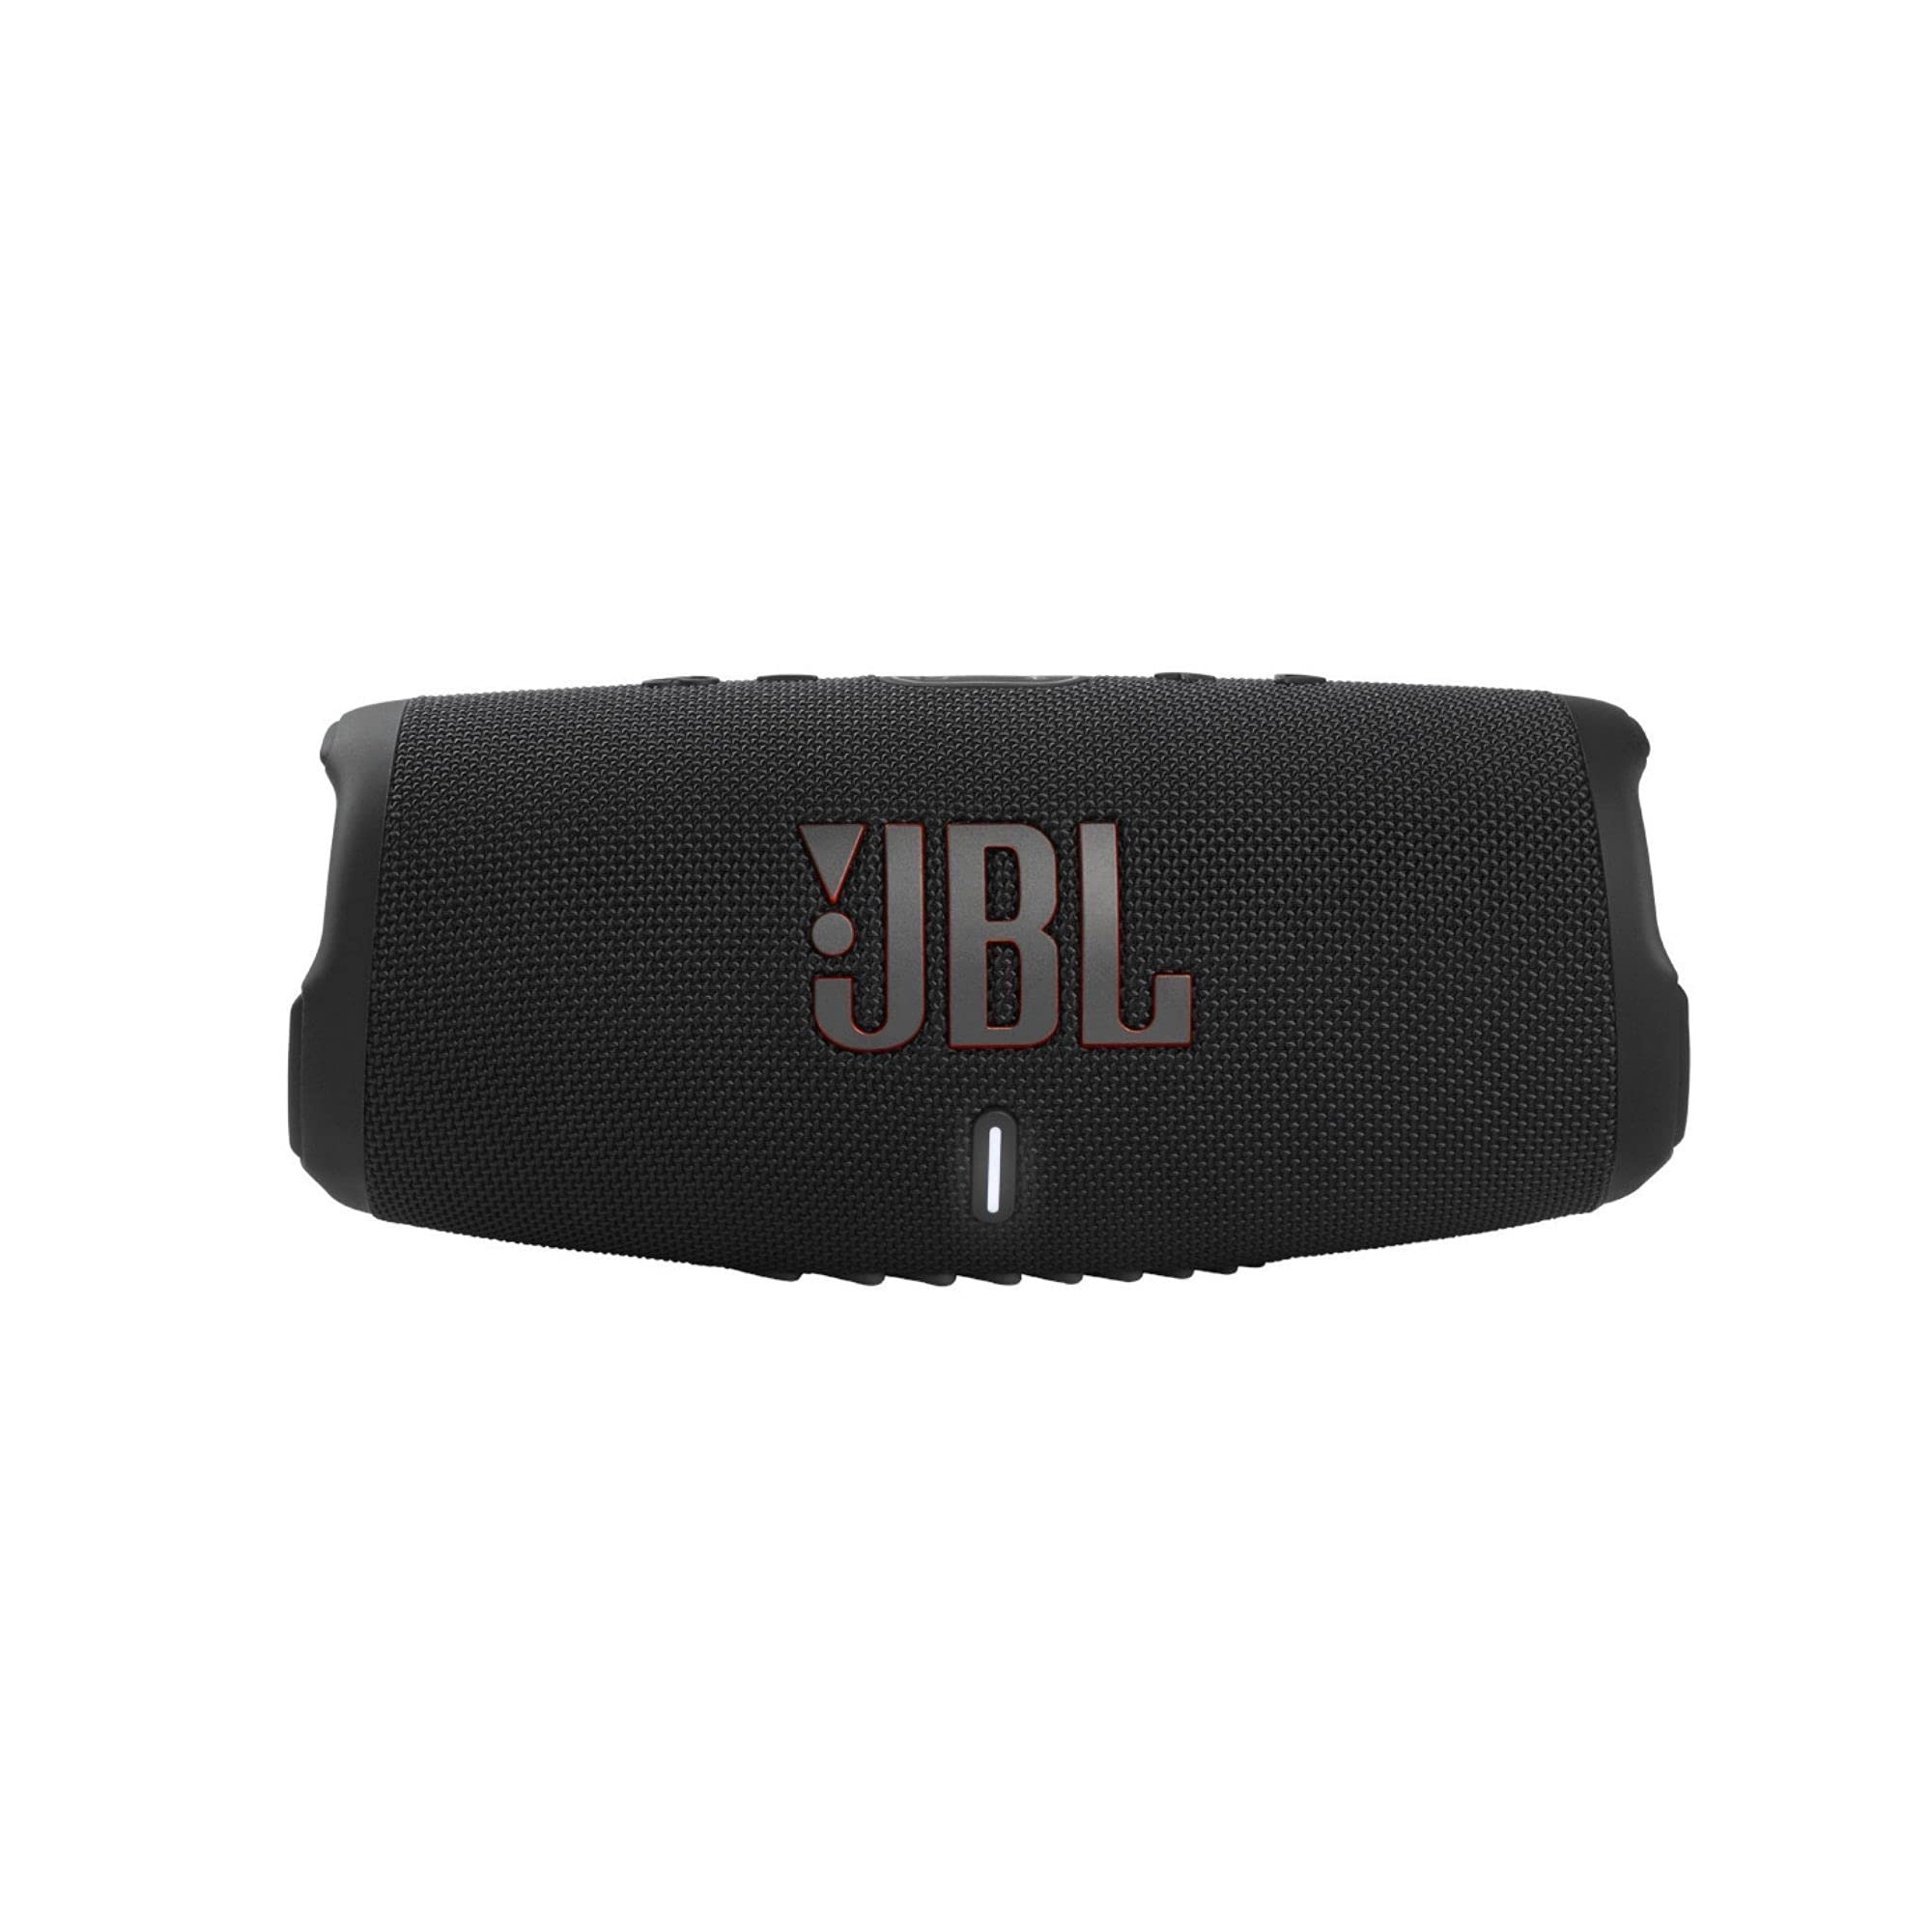 JBL Charge 5 - IP67 防水機能と USB 充電出力を備えたポータブル Bluetooth ス...